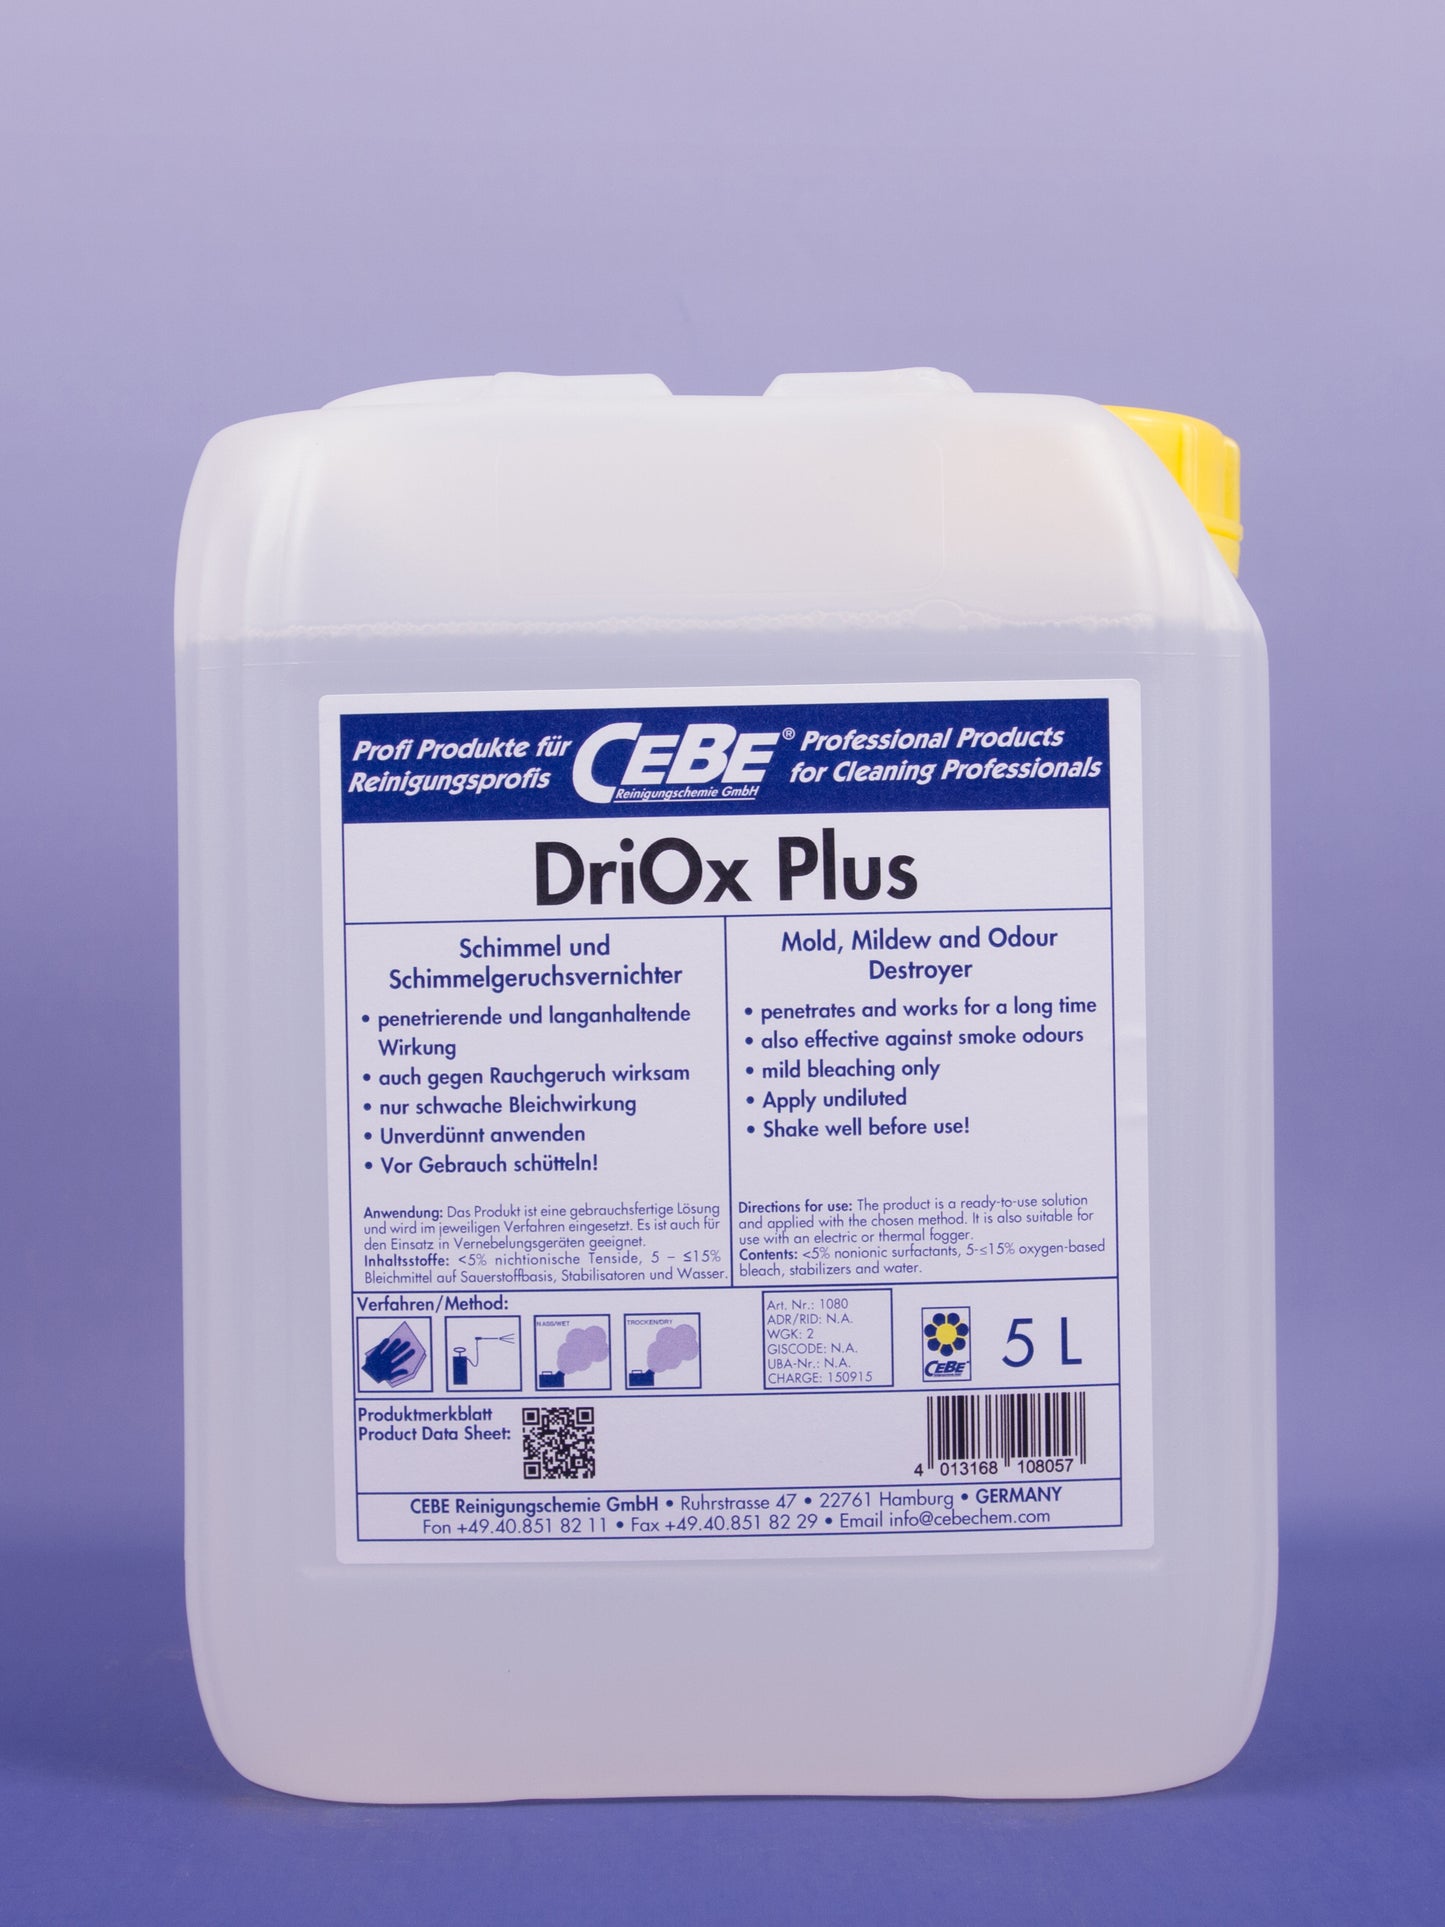 DriOx Plus